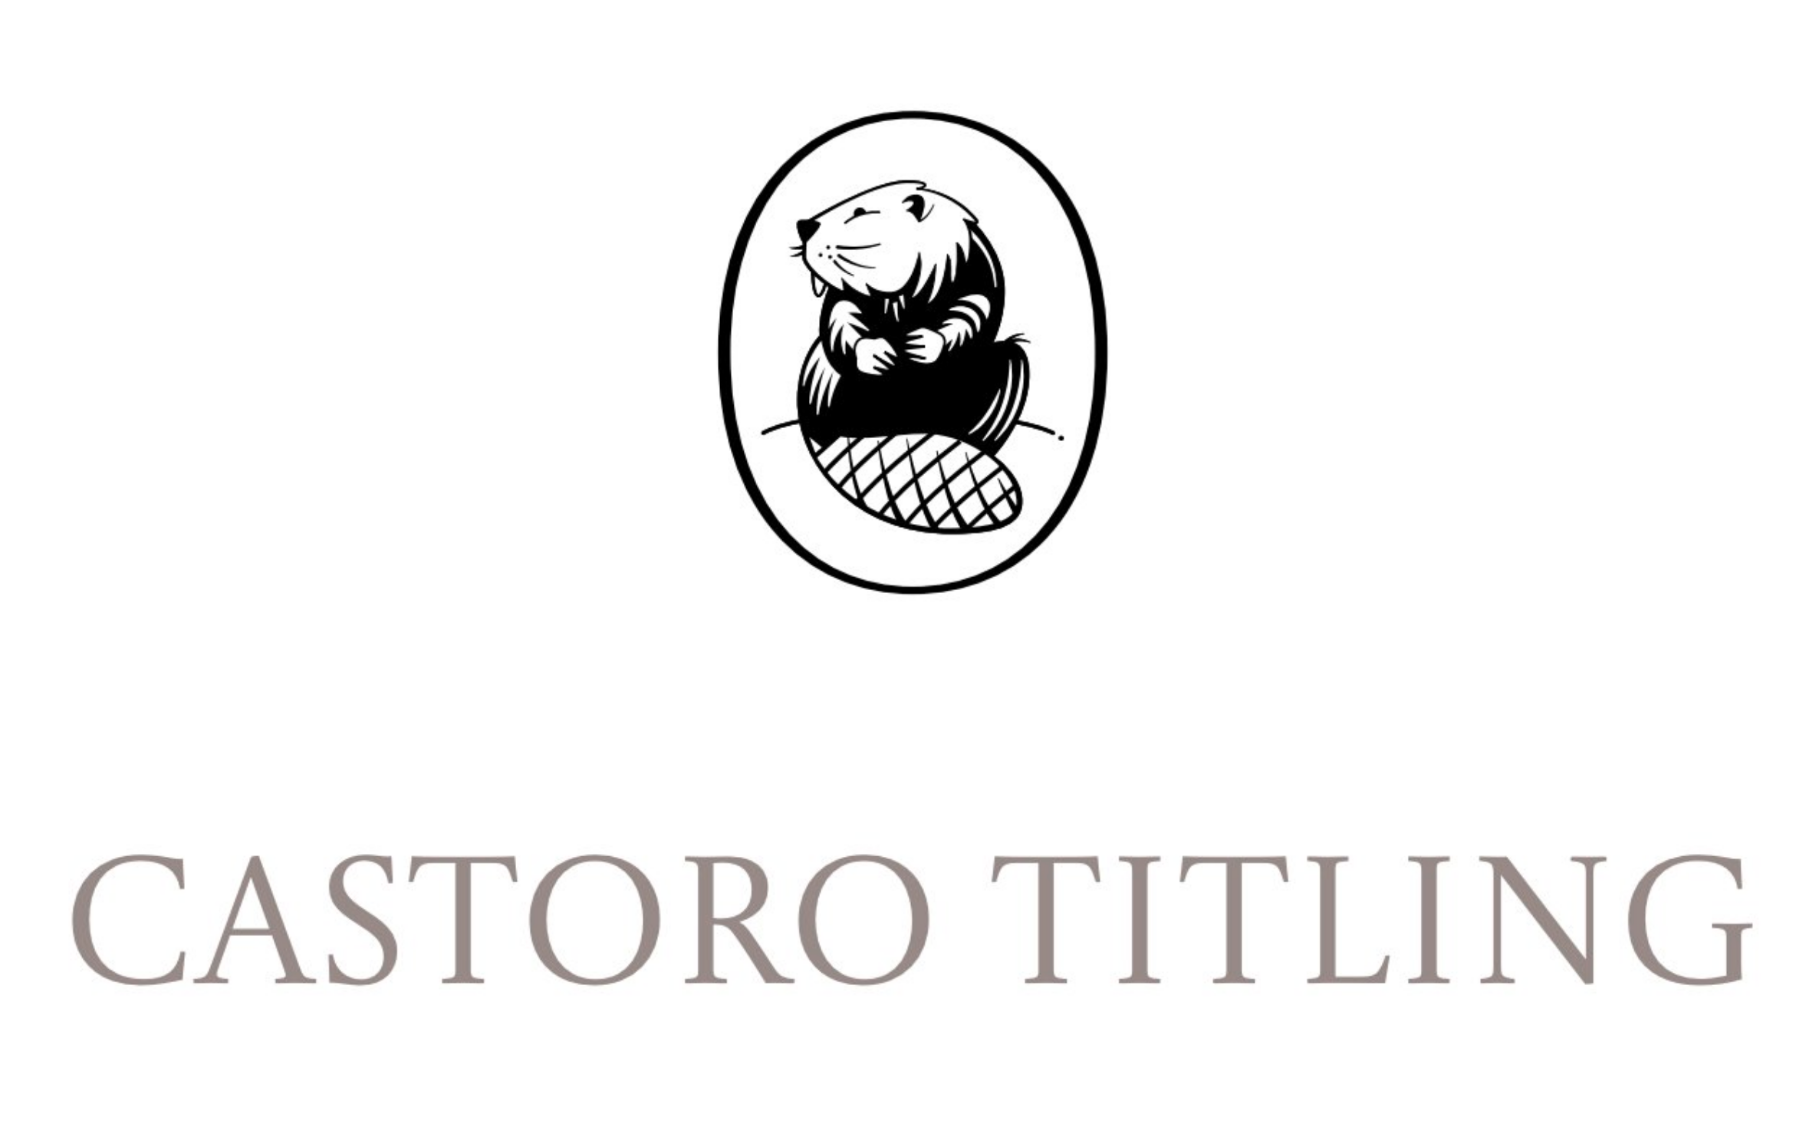 Font Castoro Titling